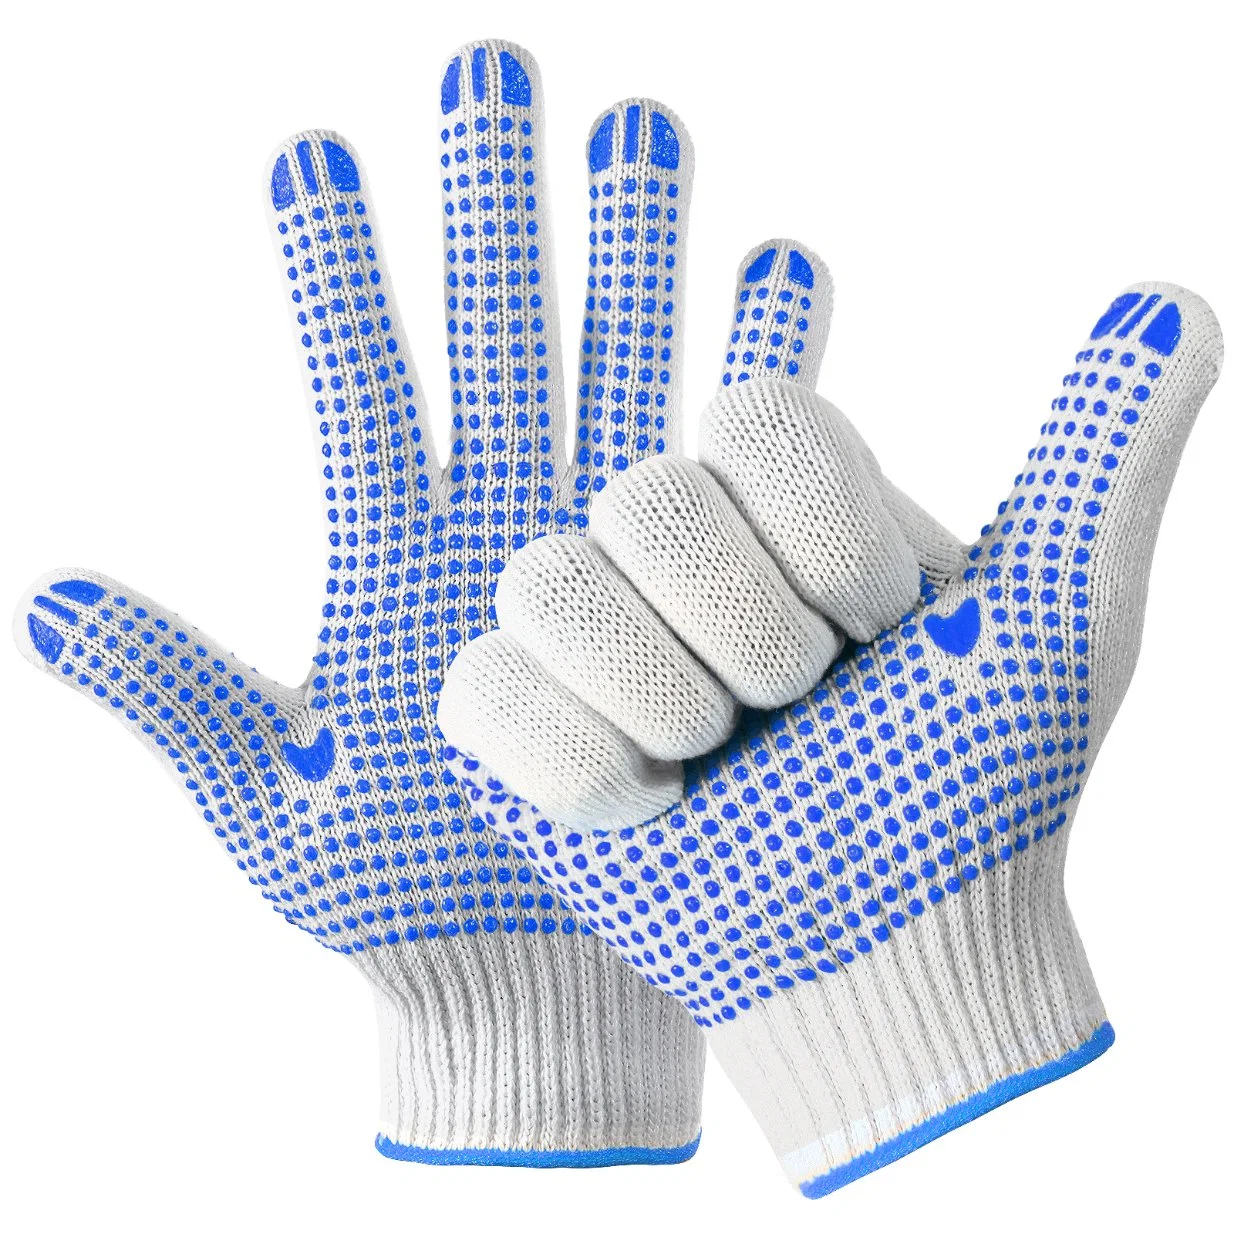 China Großhandel PVC gepunktet / Punkte Sicherheit / Arbeit / Arbeitshandschuh Industrie / Bau / Arbeits Guantes Baumwolle gestrickt Handschuhe